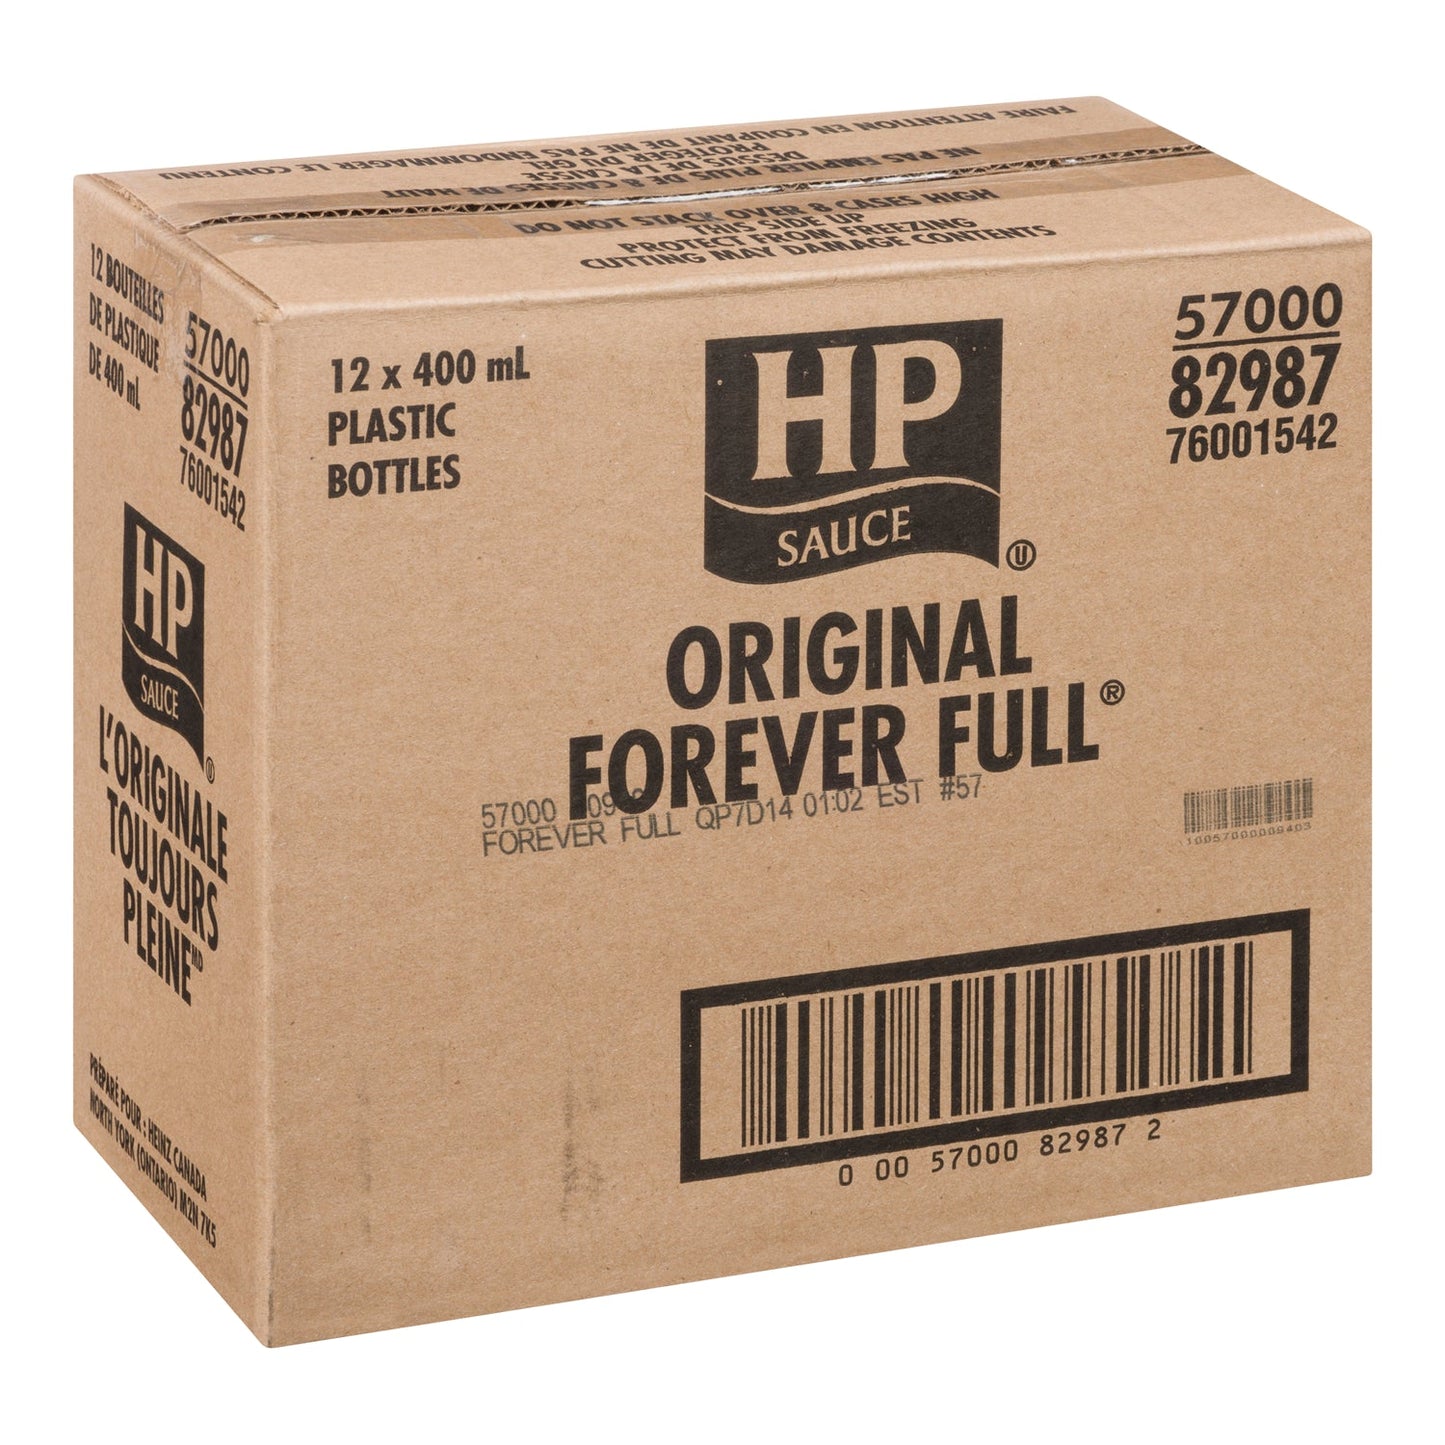 KRAFT HEINZ - HP ORIGINAL FOREVER FULL 12x400ML